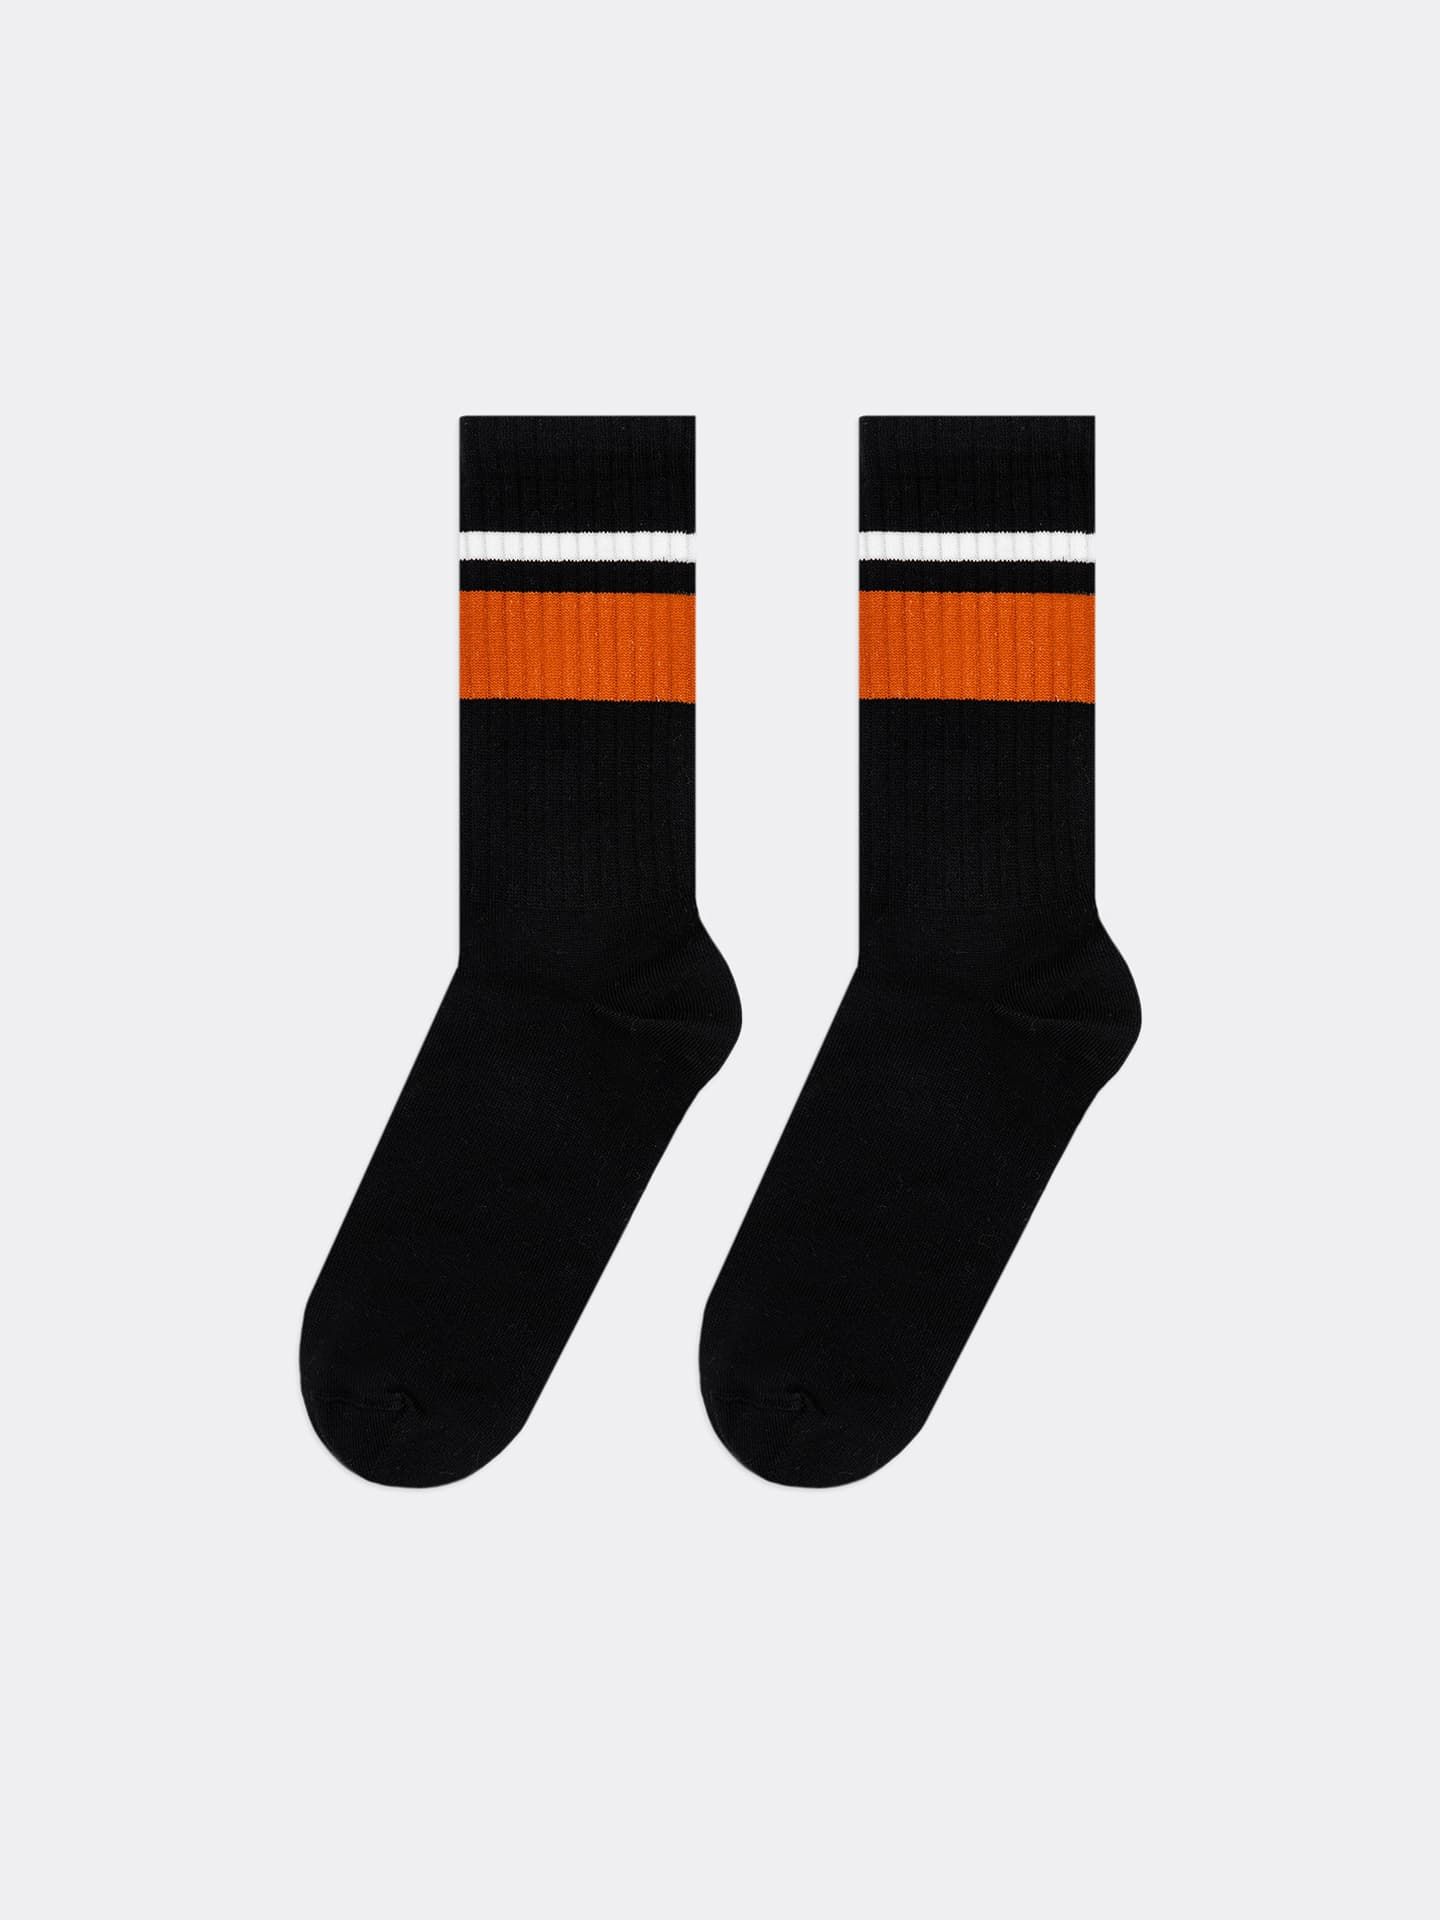 Носки высокие черные с резинкой в рубчик, с оранжевой и белой полоской